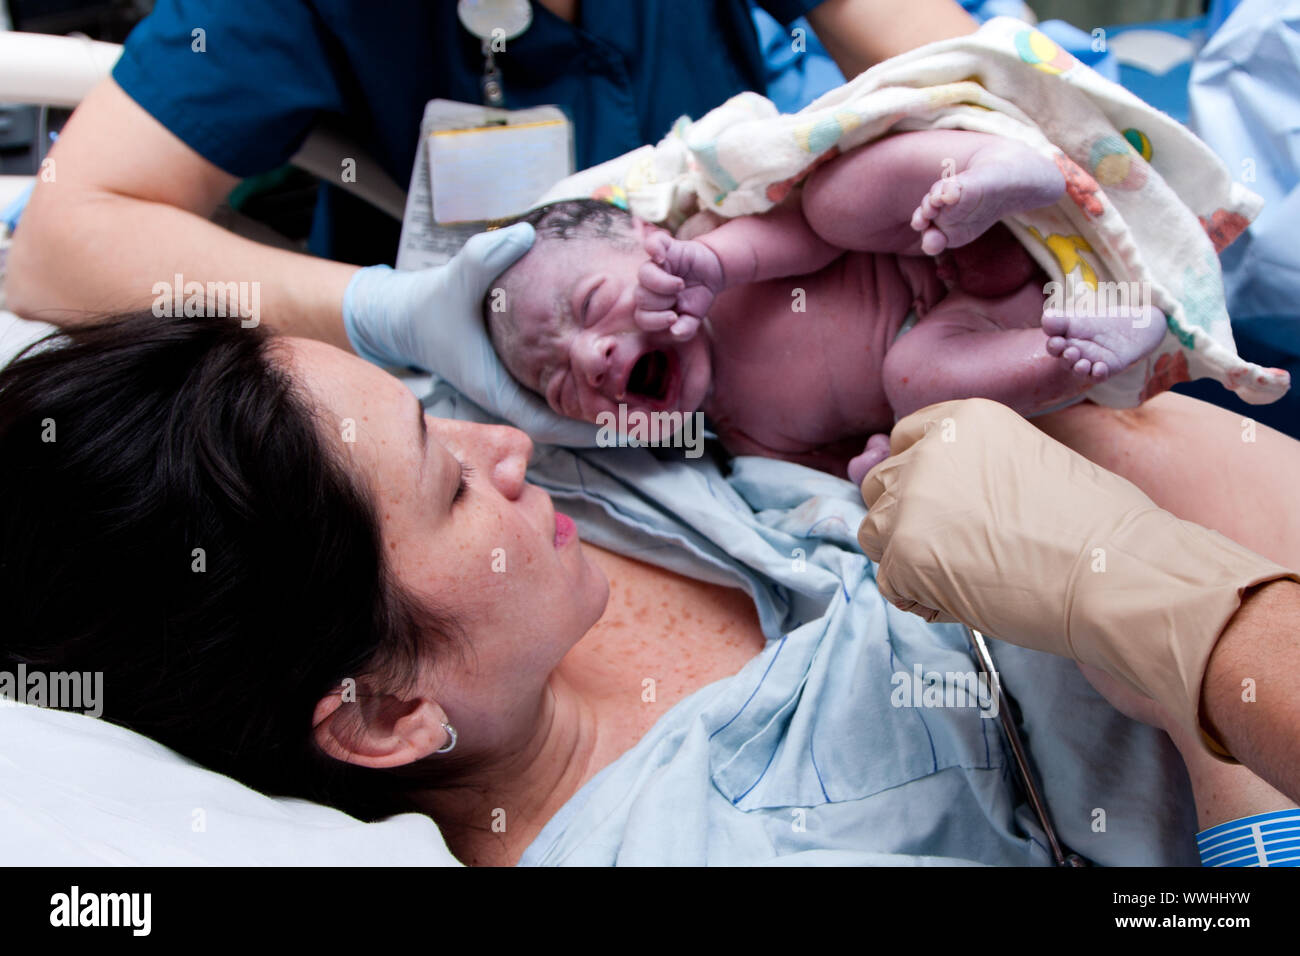 Nel travaglio del parto alla nascita di baby nuova vita in ospedale. Infant coperti di grasso e lanugo è il pianto e detenute da infermieri e medici. Foto Stock